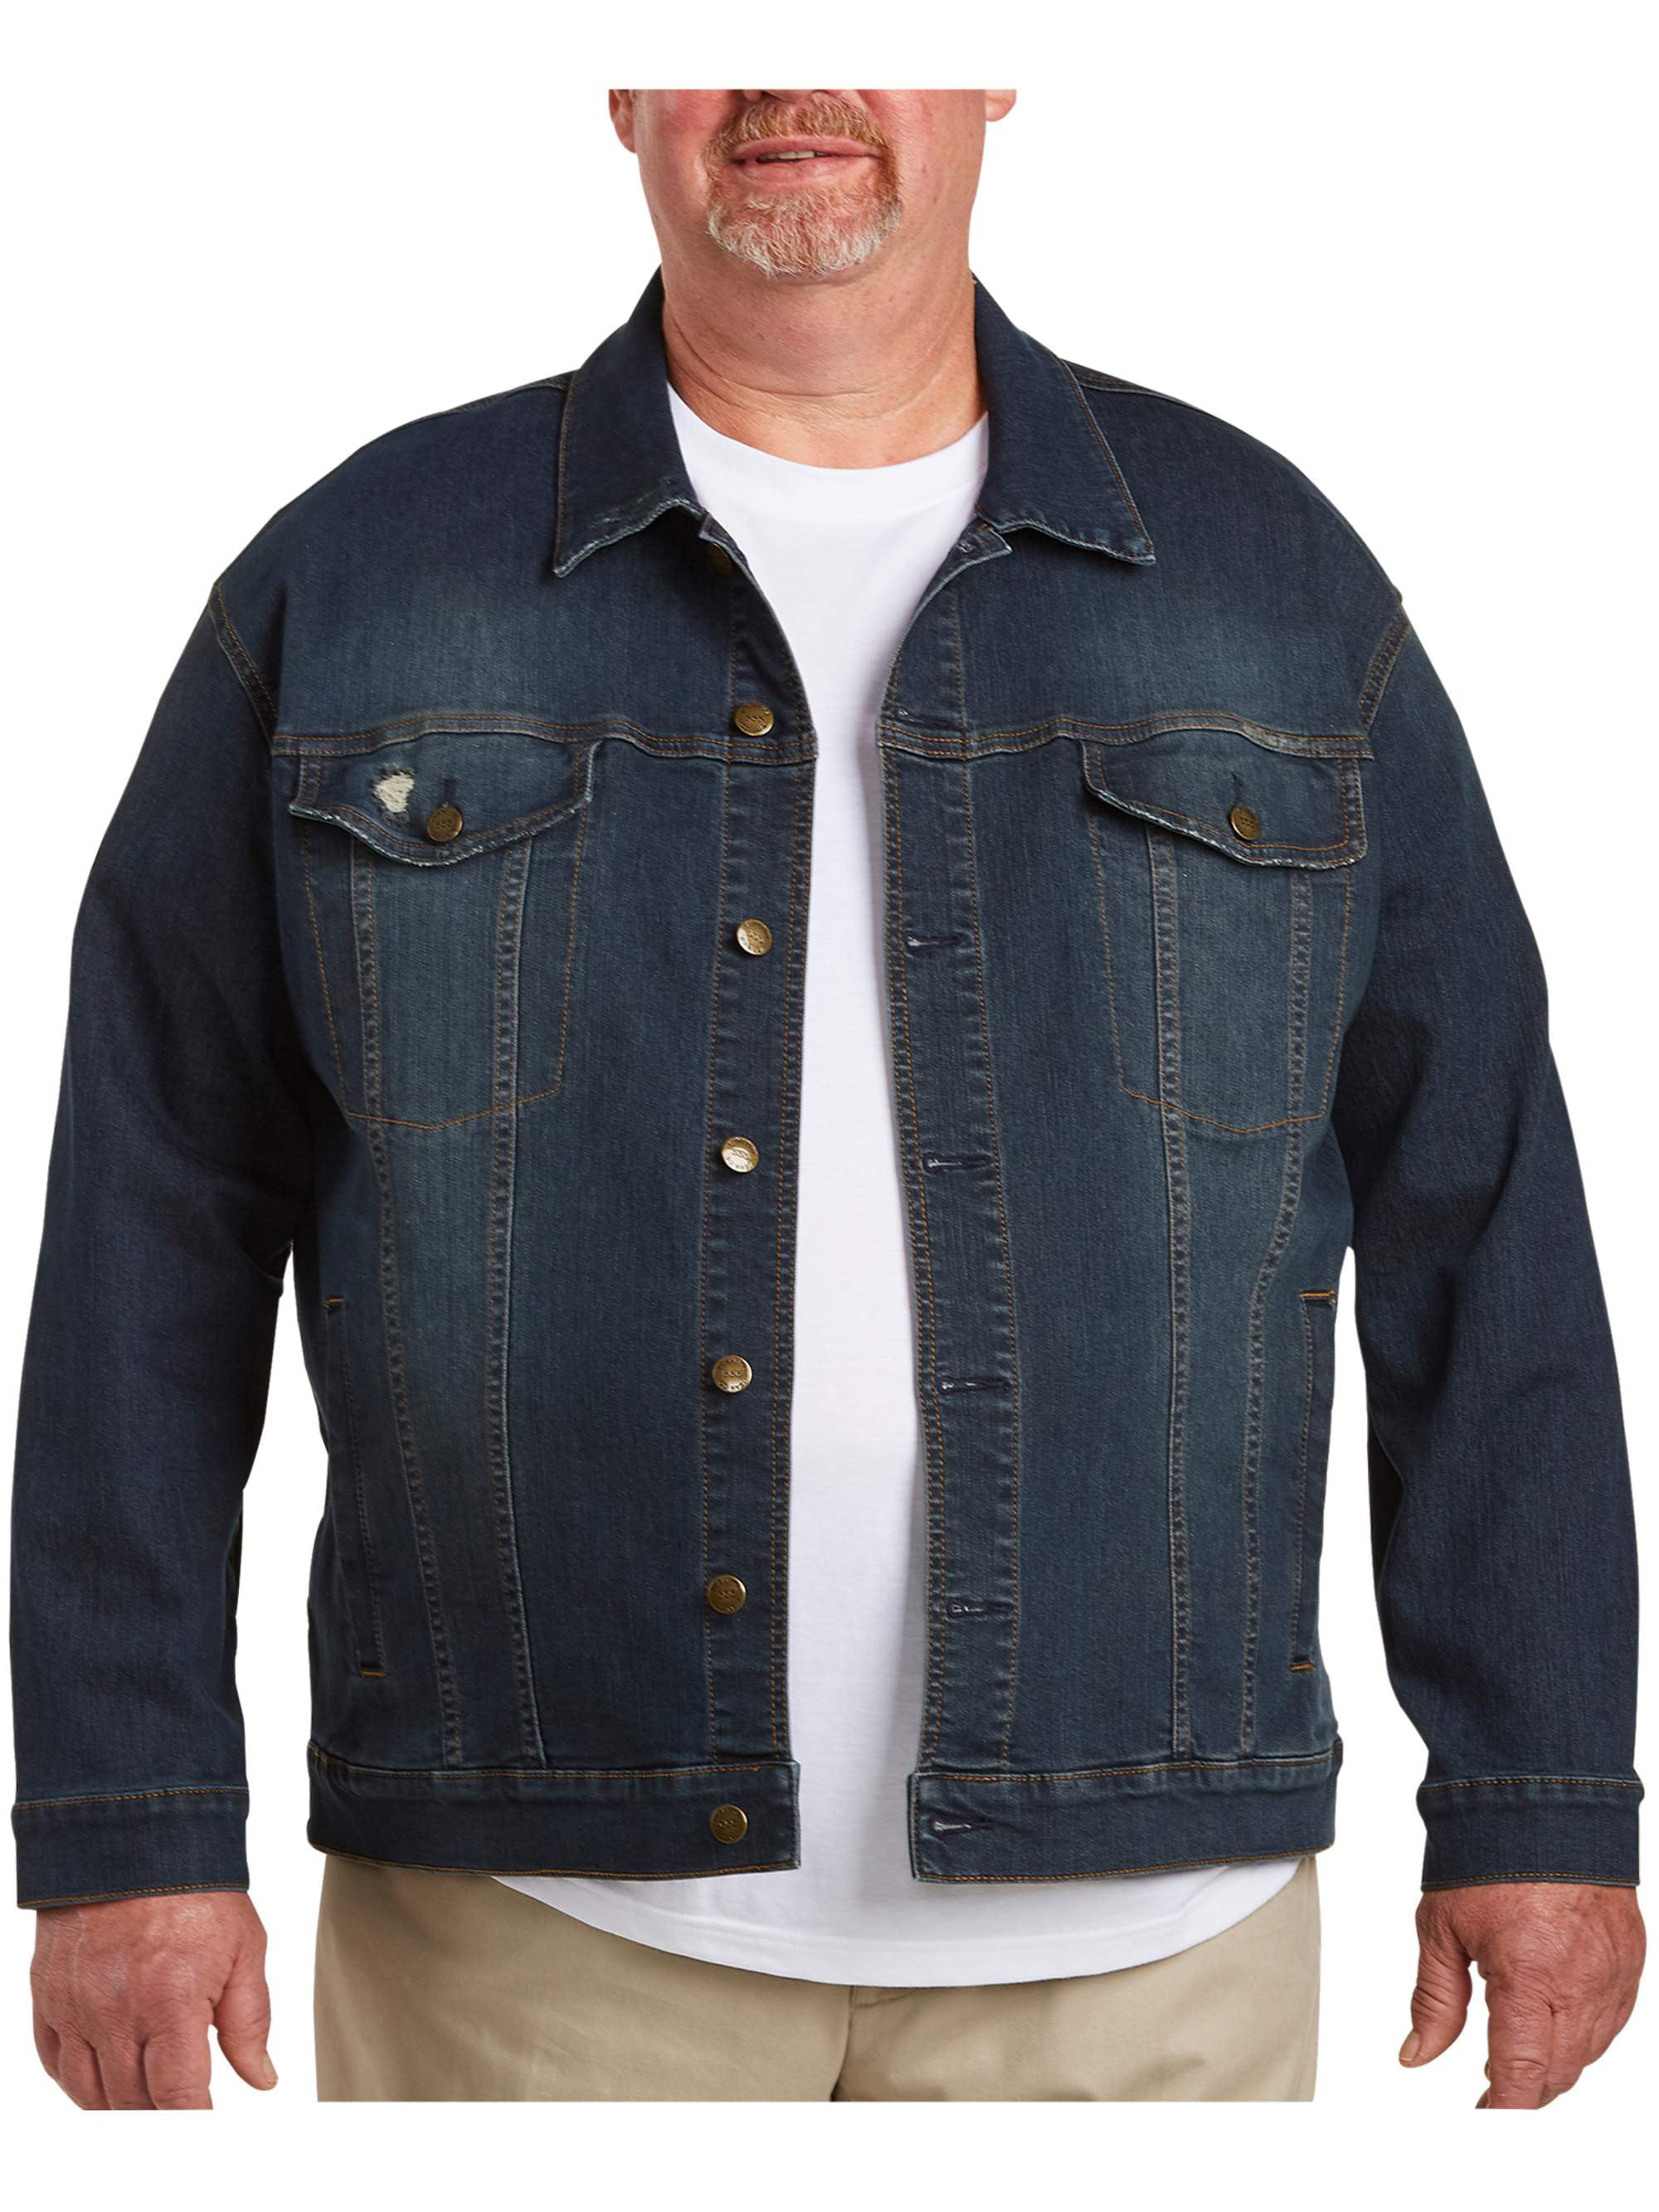 Vintage Distressed Denim Jacket Coat Top Blouse Big & Tall NRUTUP Mens Activewear 